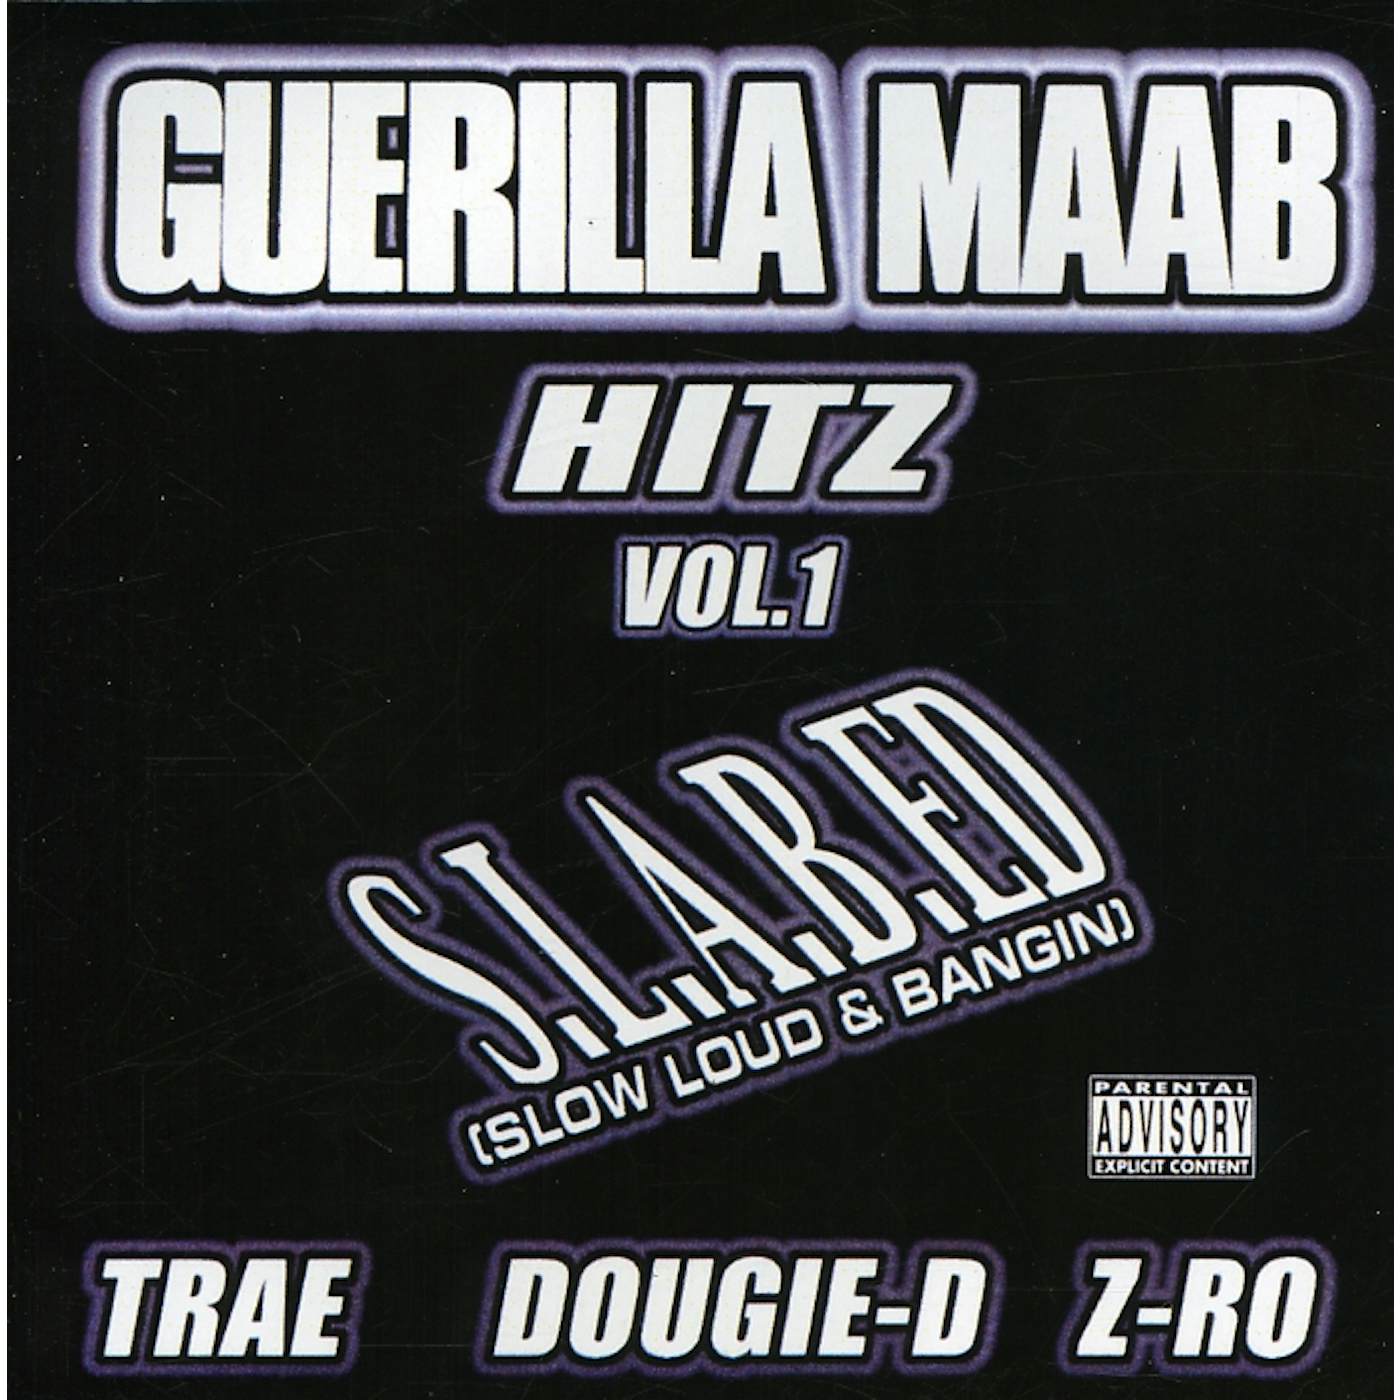 GUERILLA MAAB HITZ 1 CD